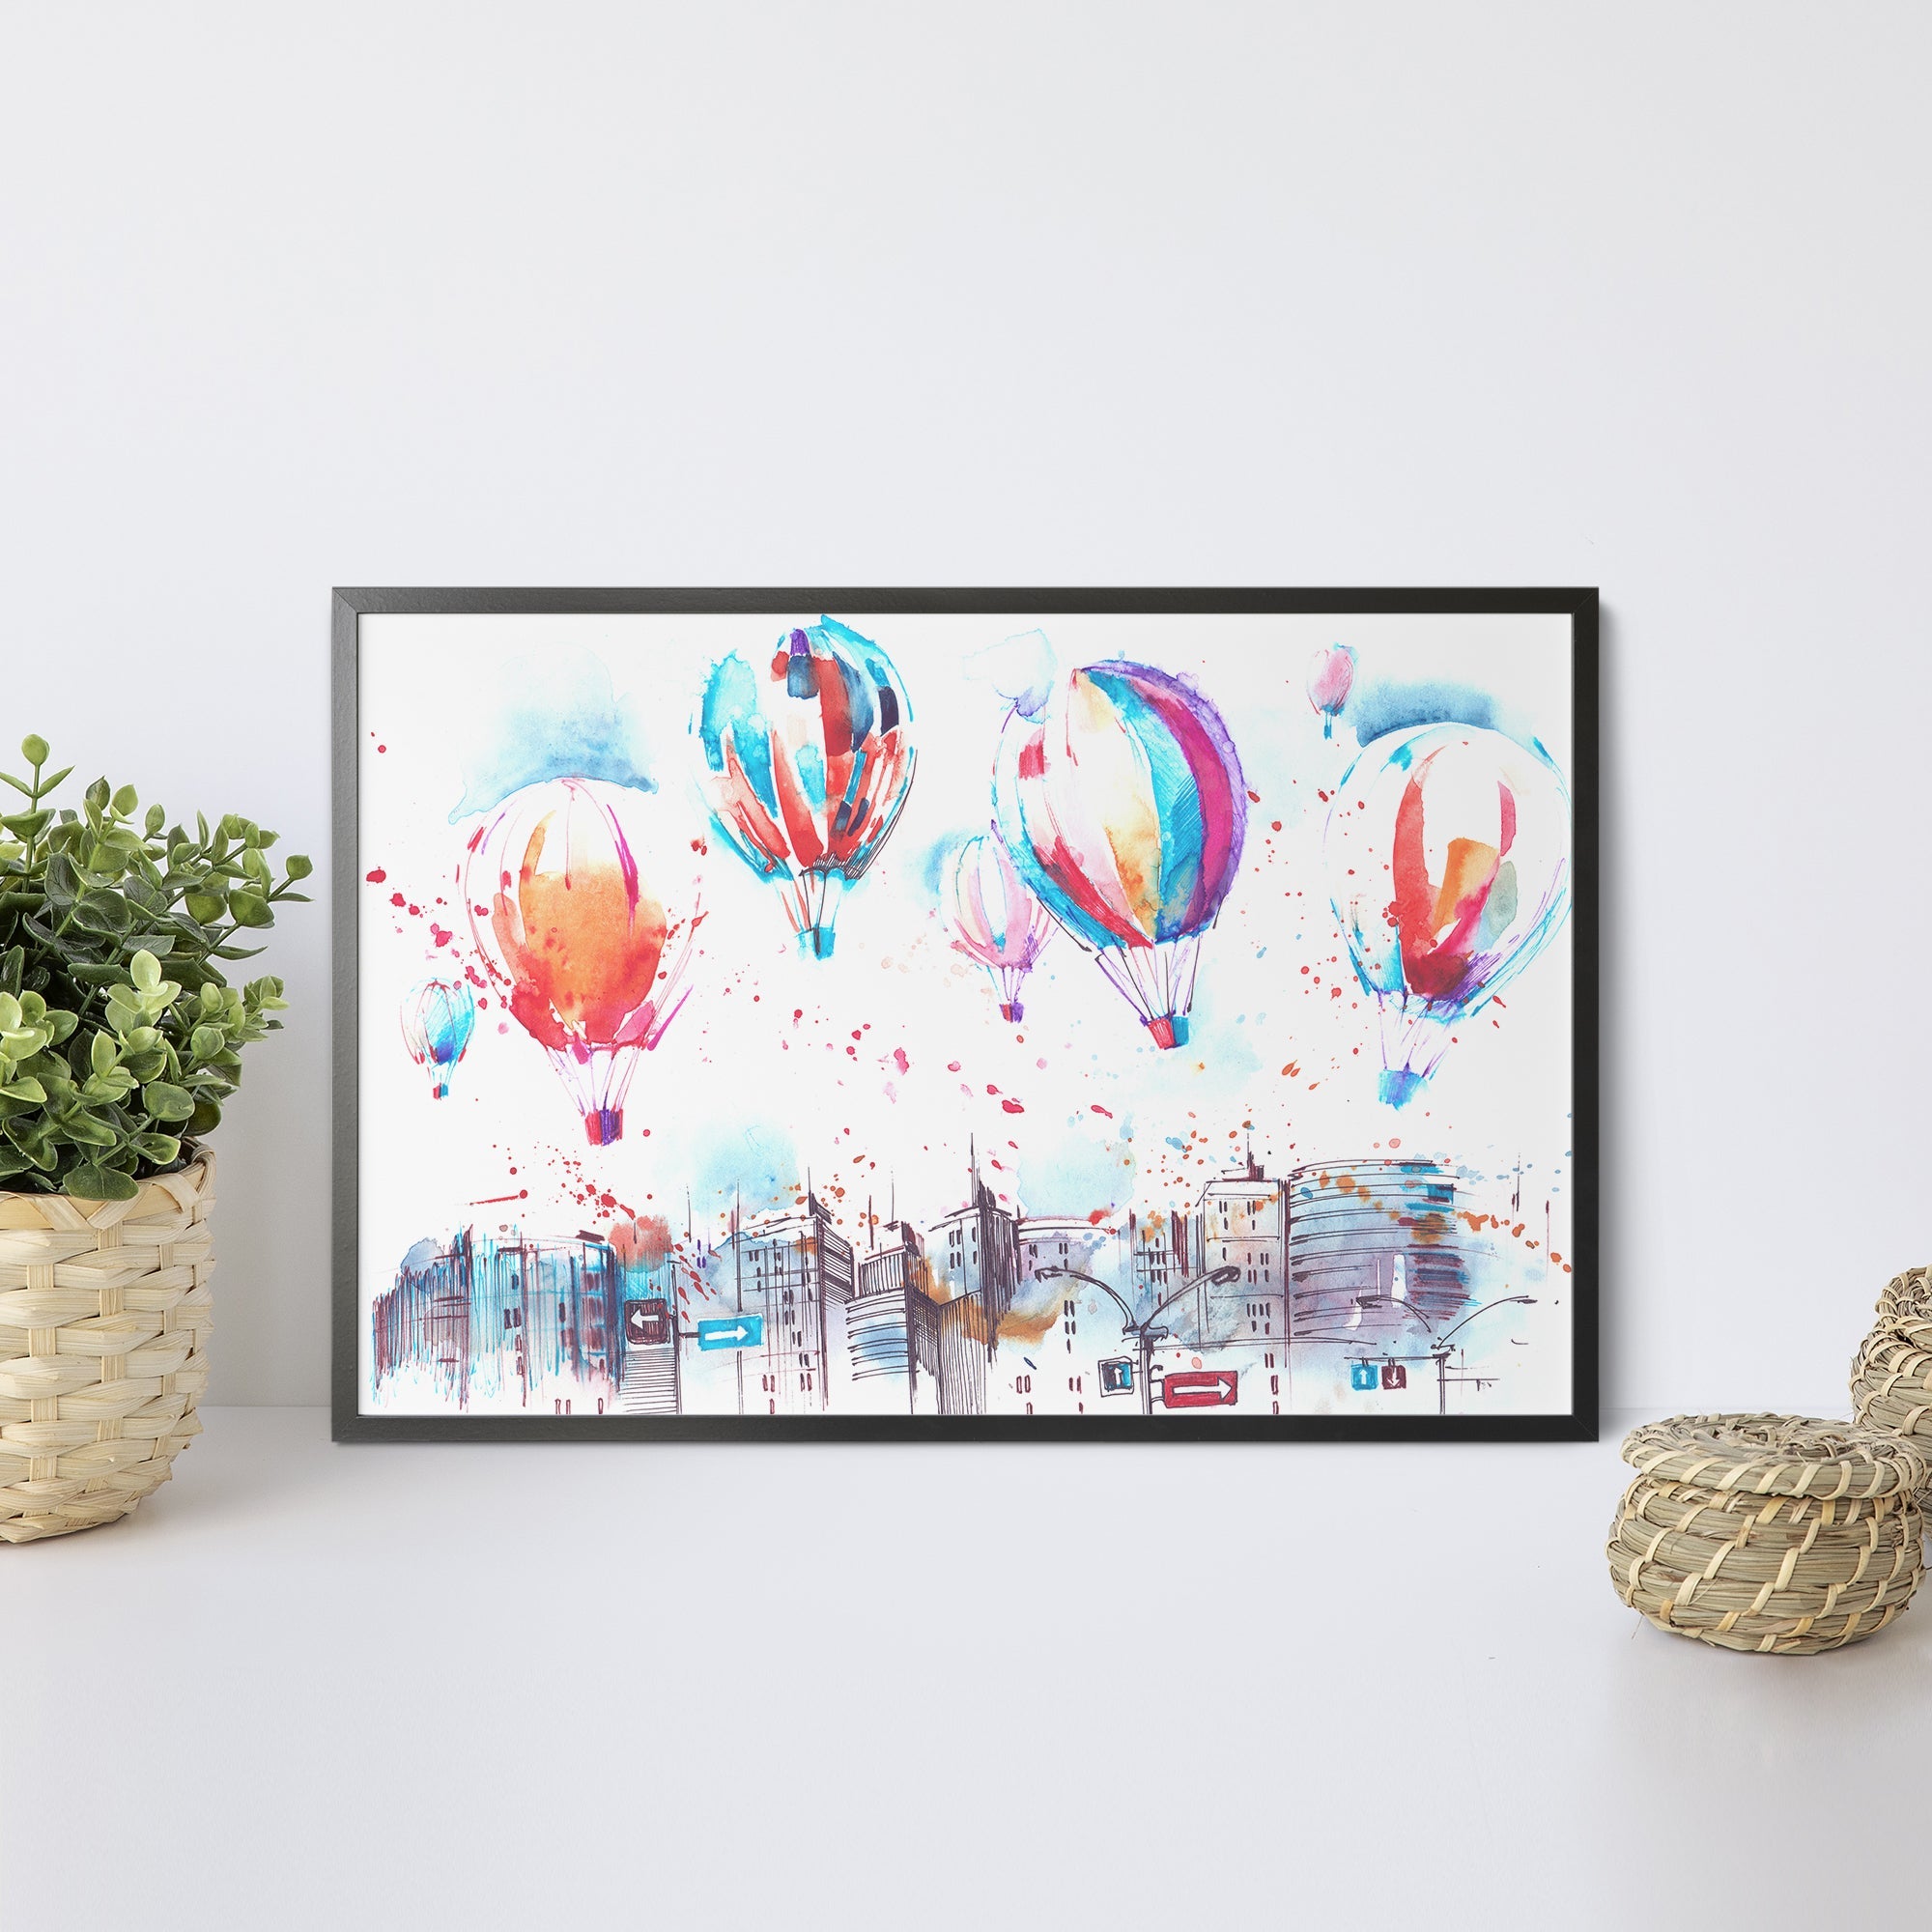 Foto obraz w ramie - Akwarela, balony nad miastem (kolorowy) - Gallart.pl